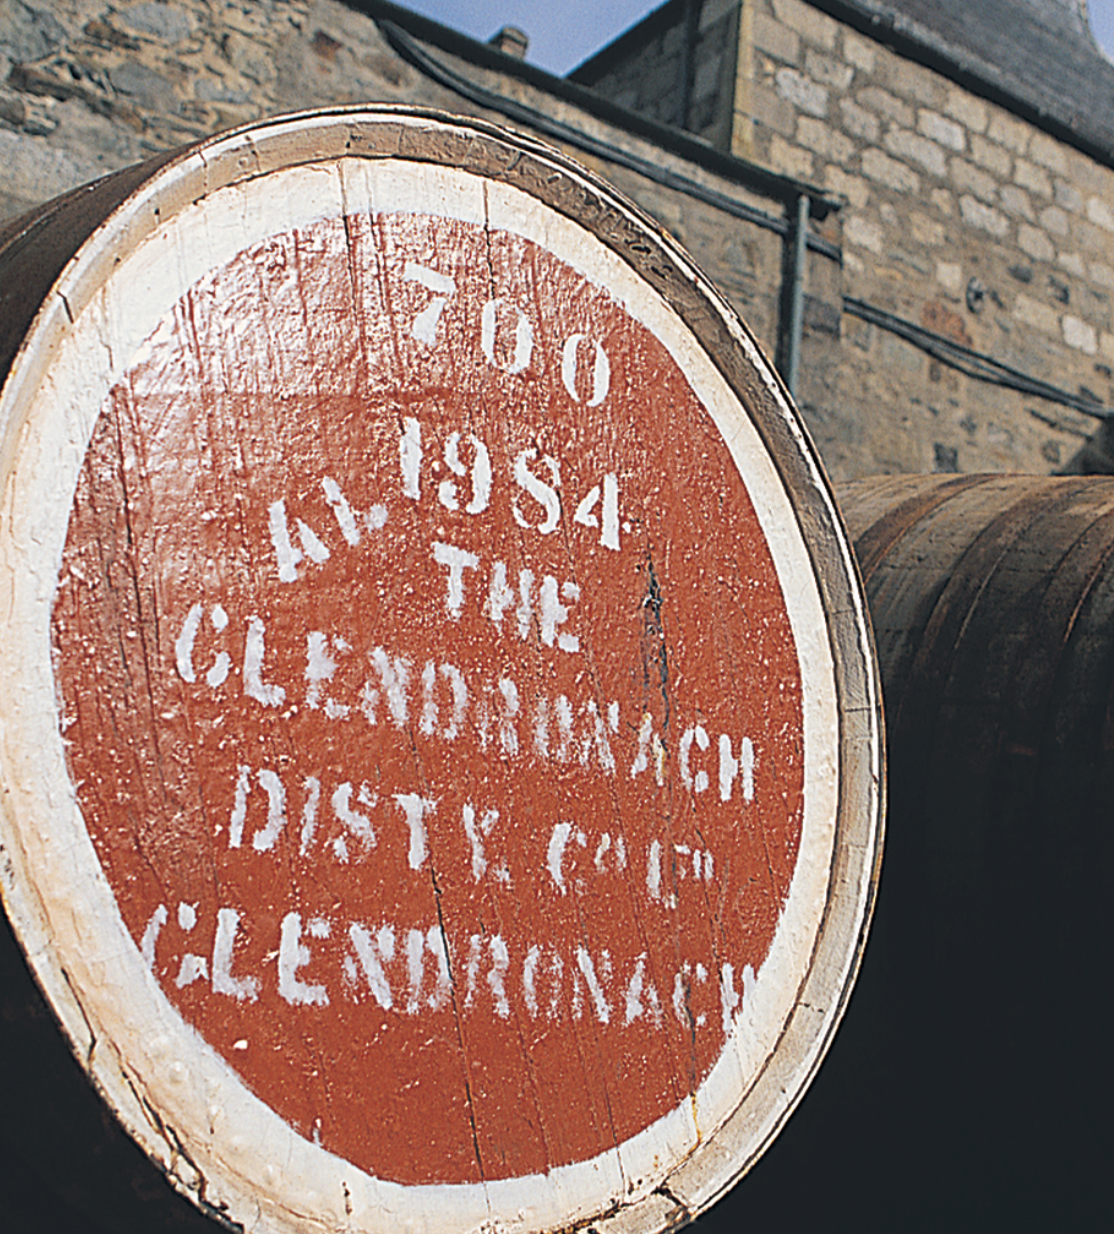 Barrel at GlenDronach Distillery.